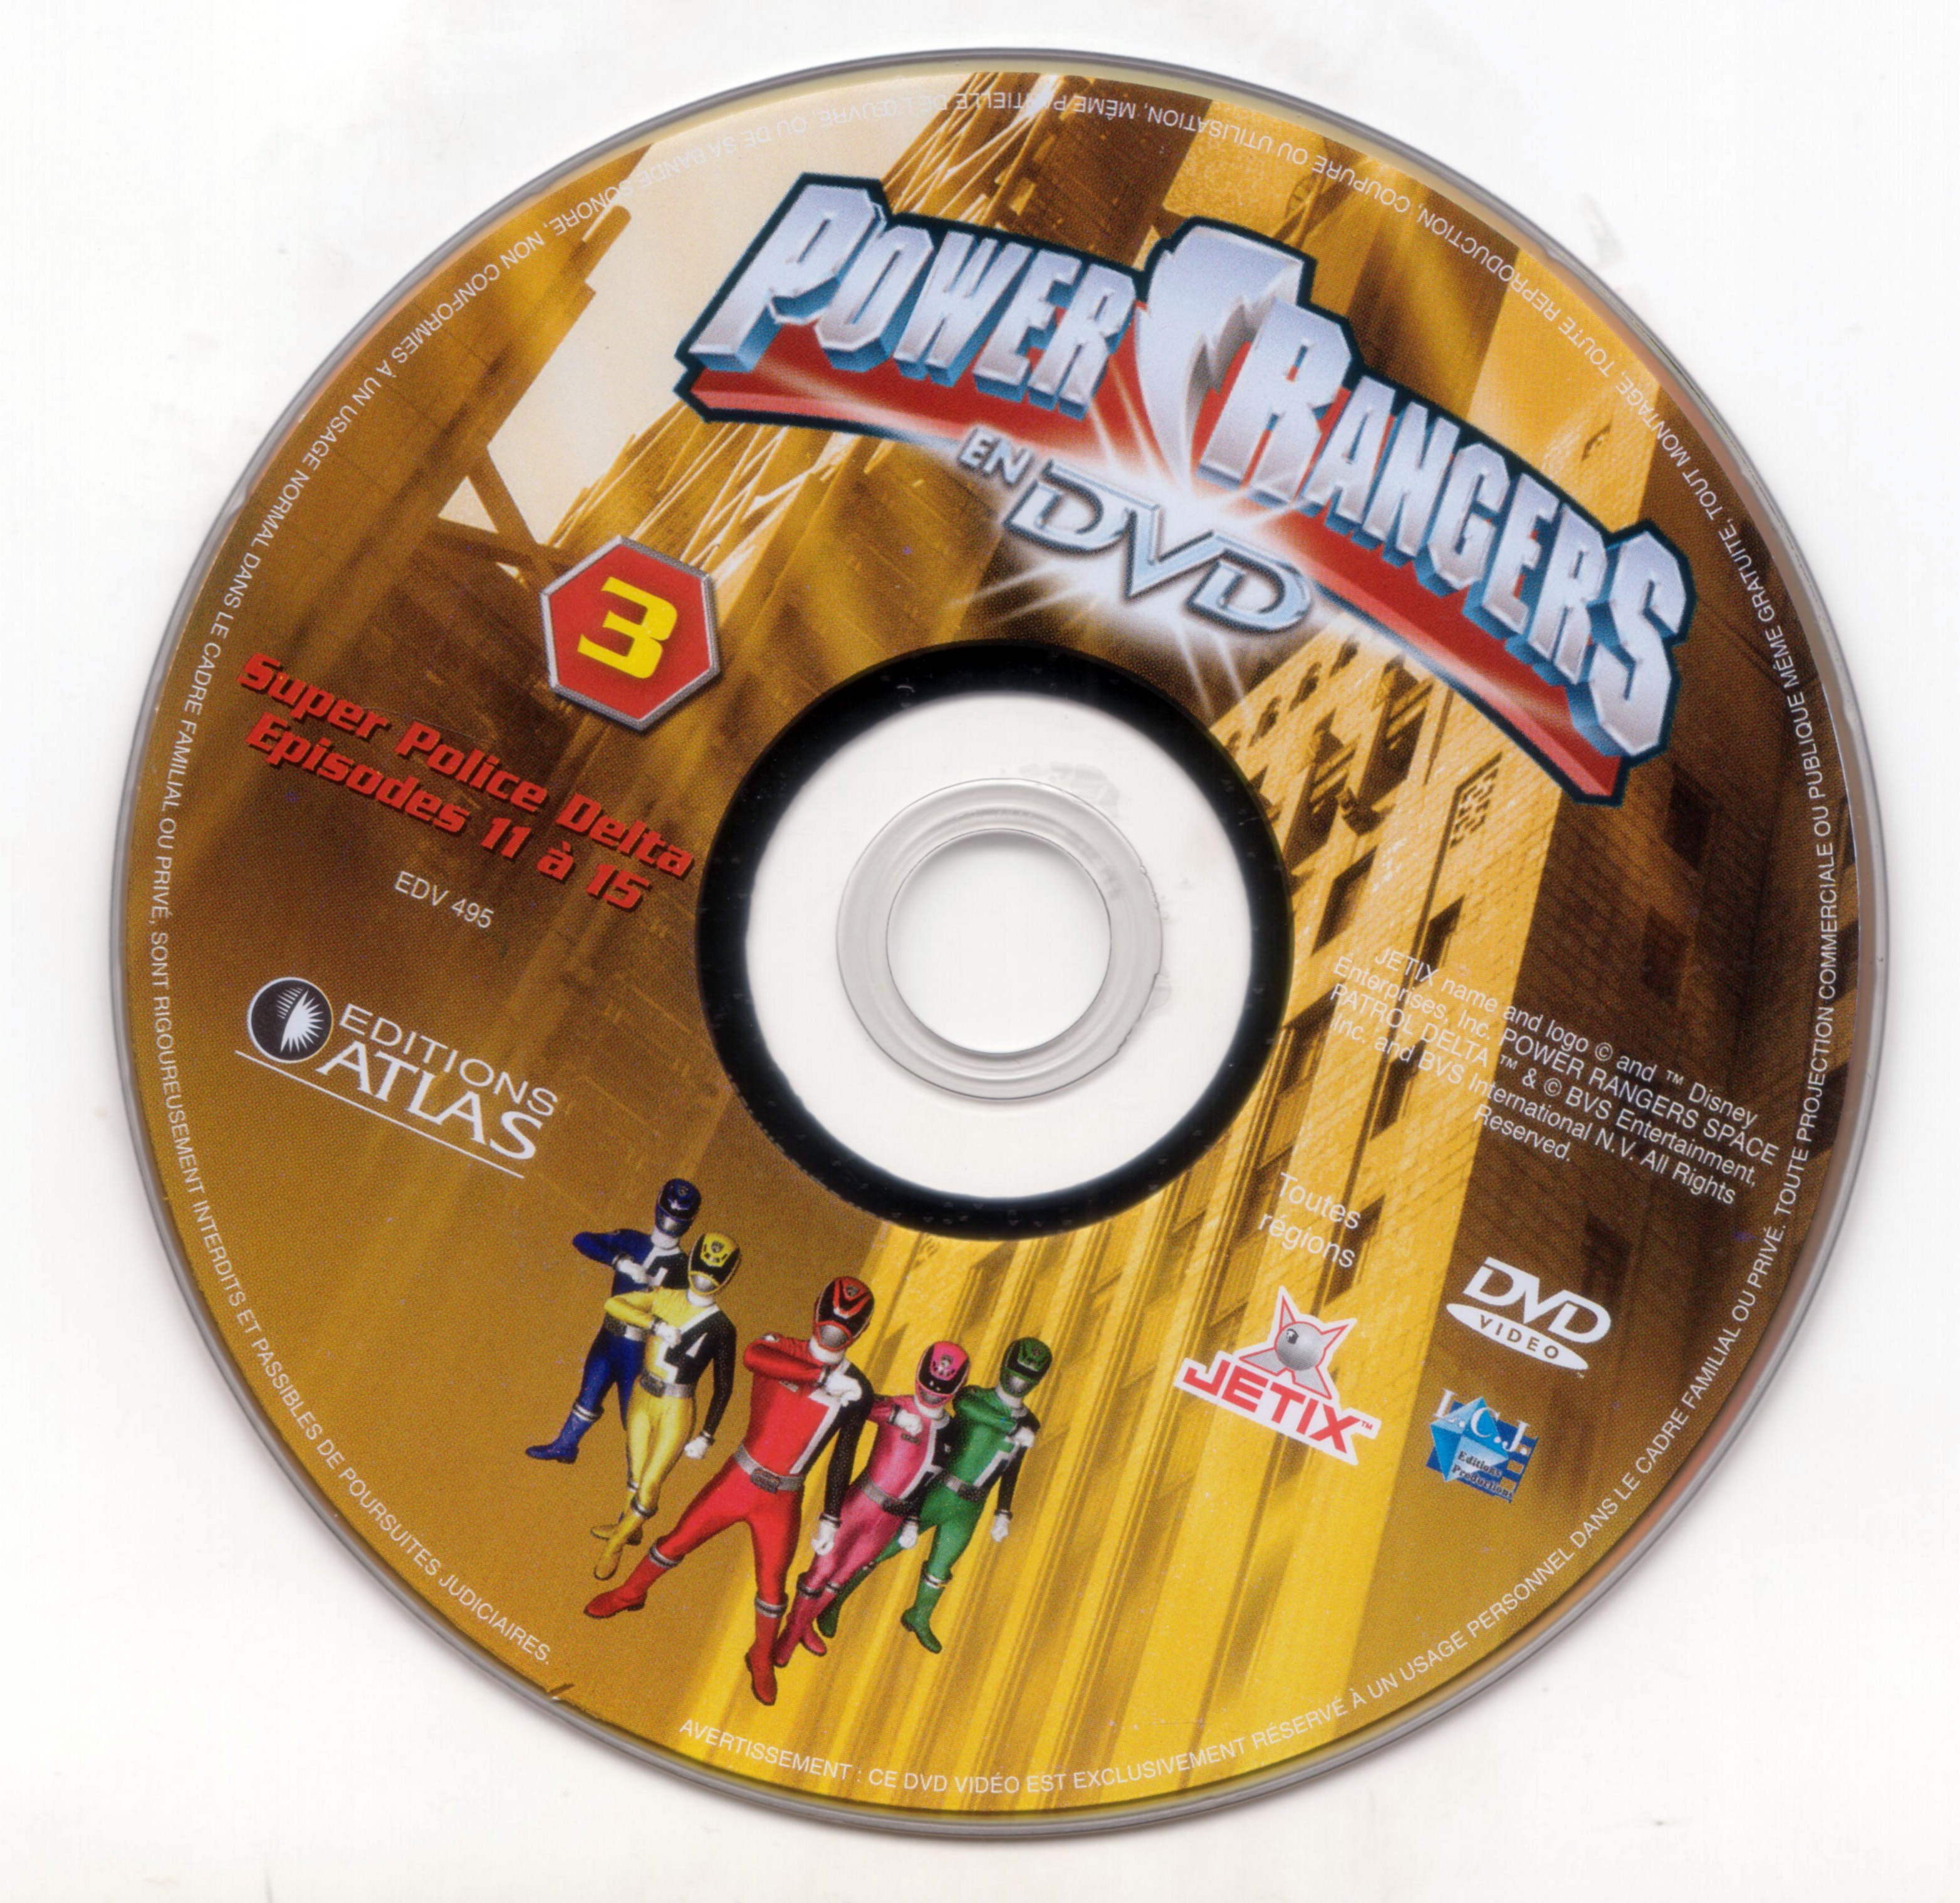 Power rangers DVD 3 (Ed Atlas)